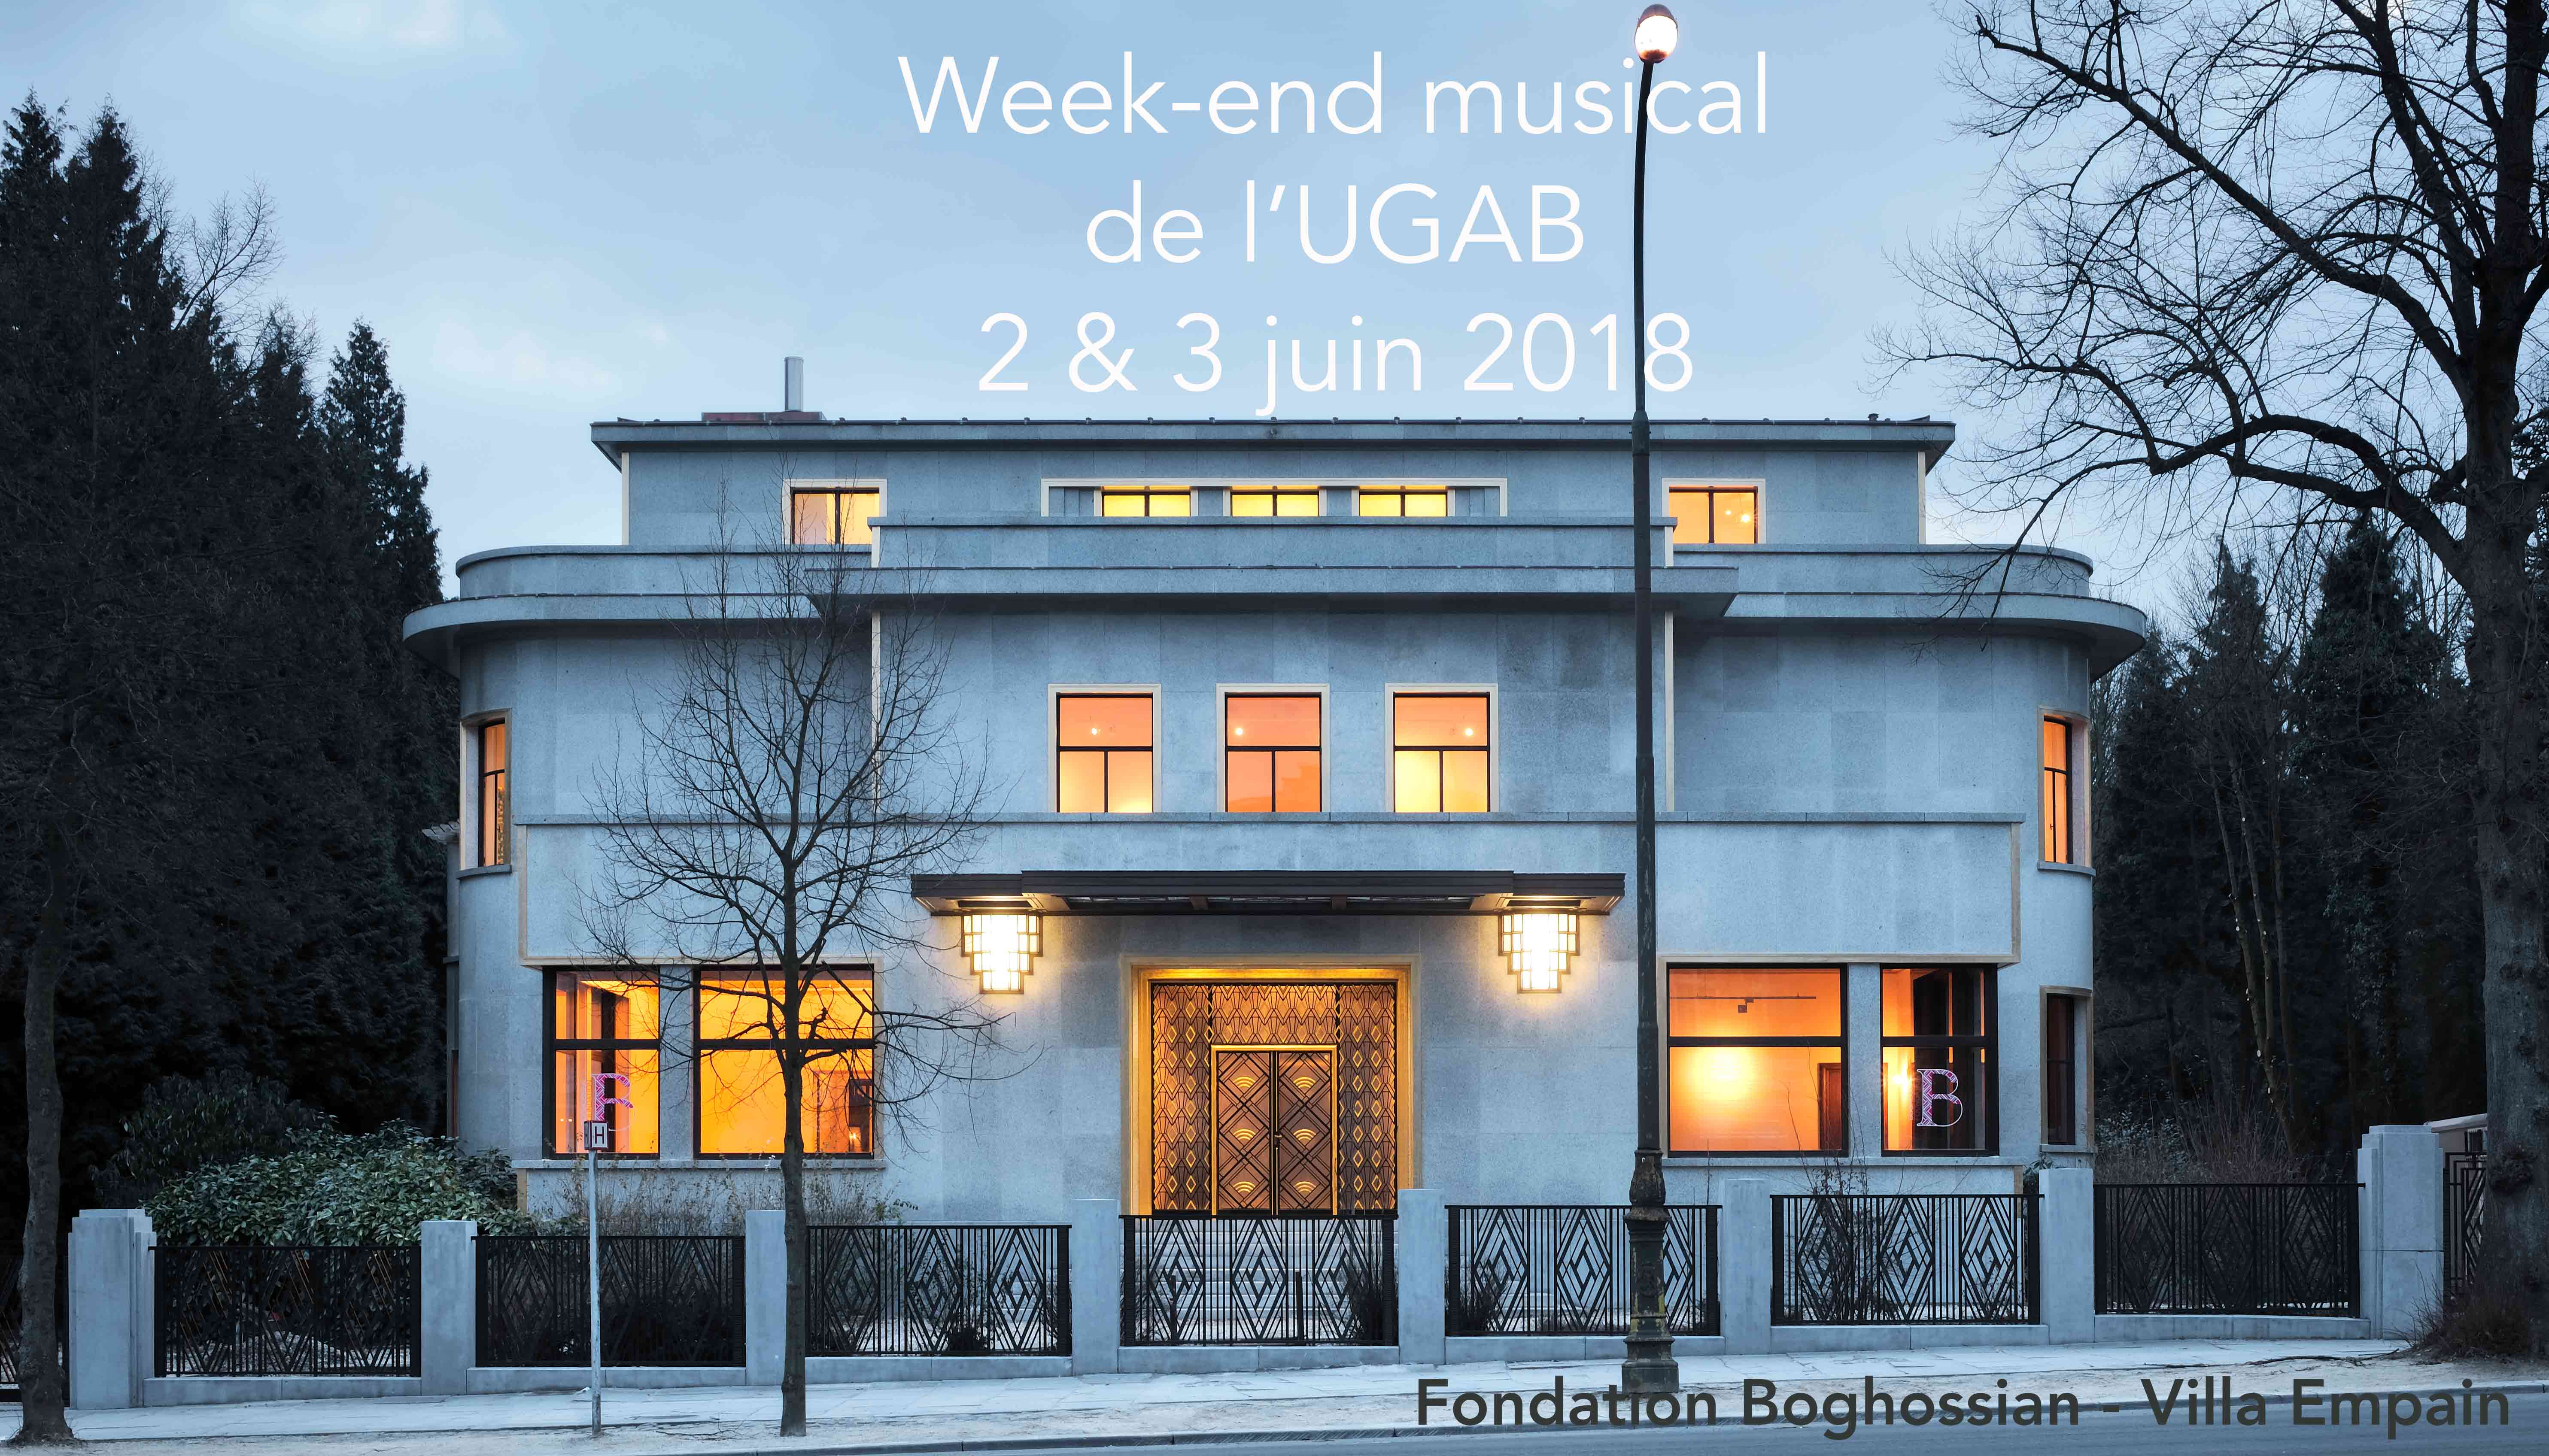 AGBU Musical Weekend – Brussels, Belgium